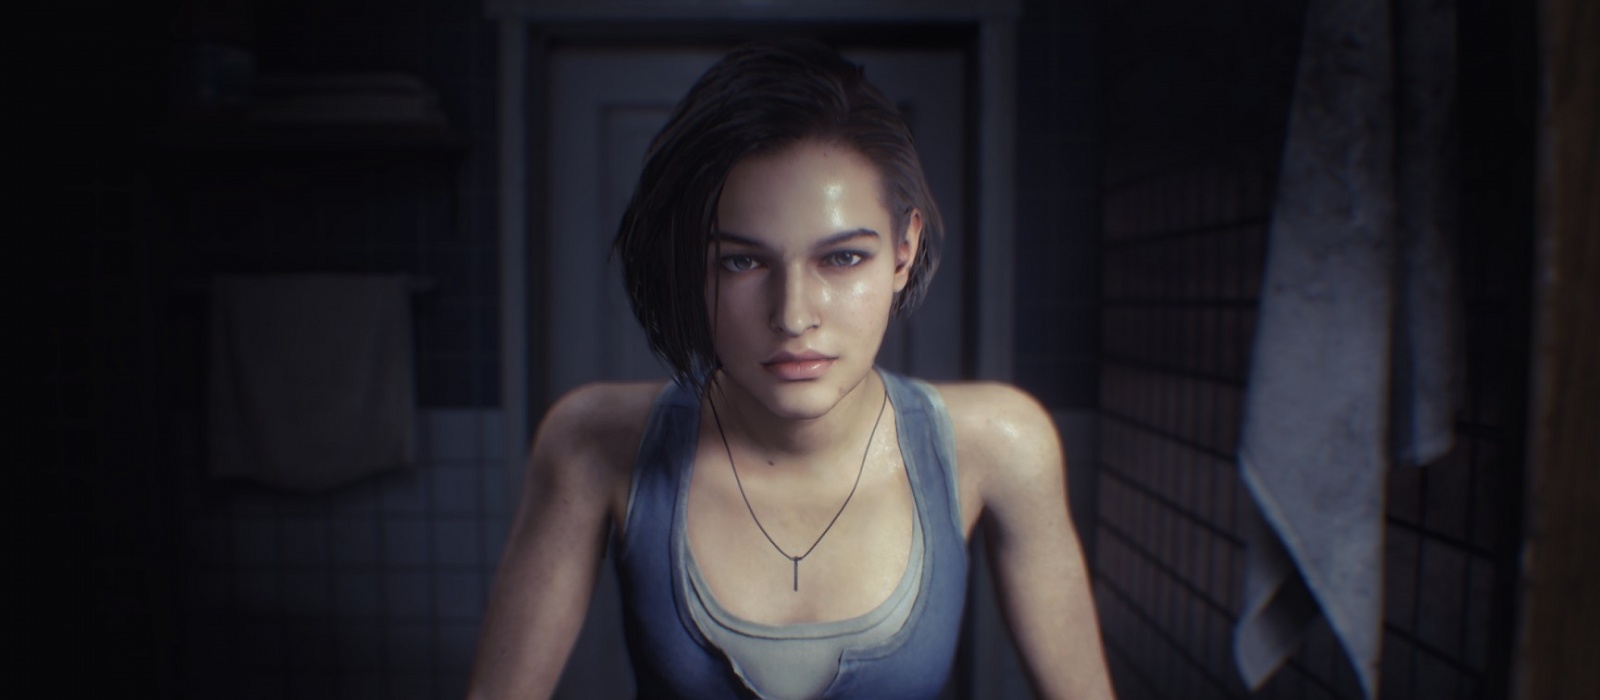 Россиянка закосплеила Джилл из Resident Evil 3 и сравнила фото со скриншотом. Многие не могут найти разницу